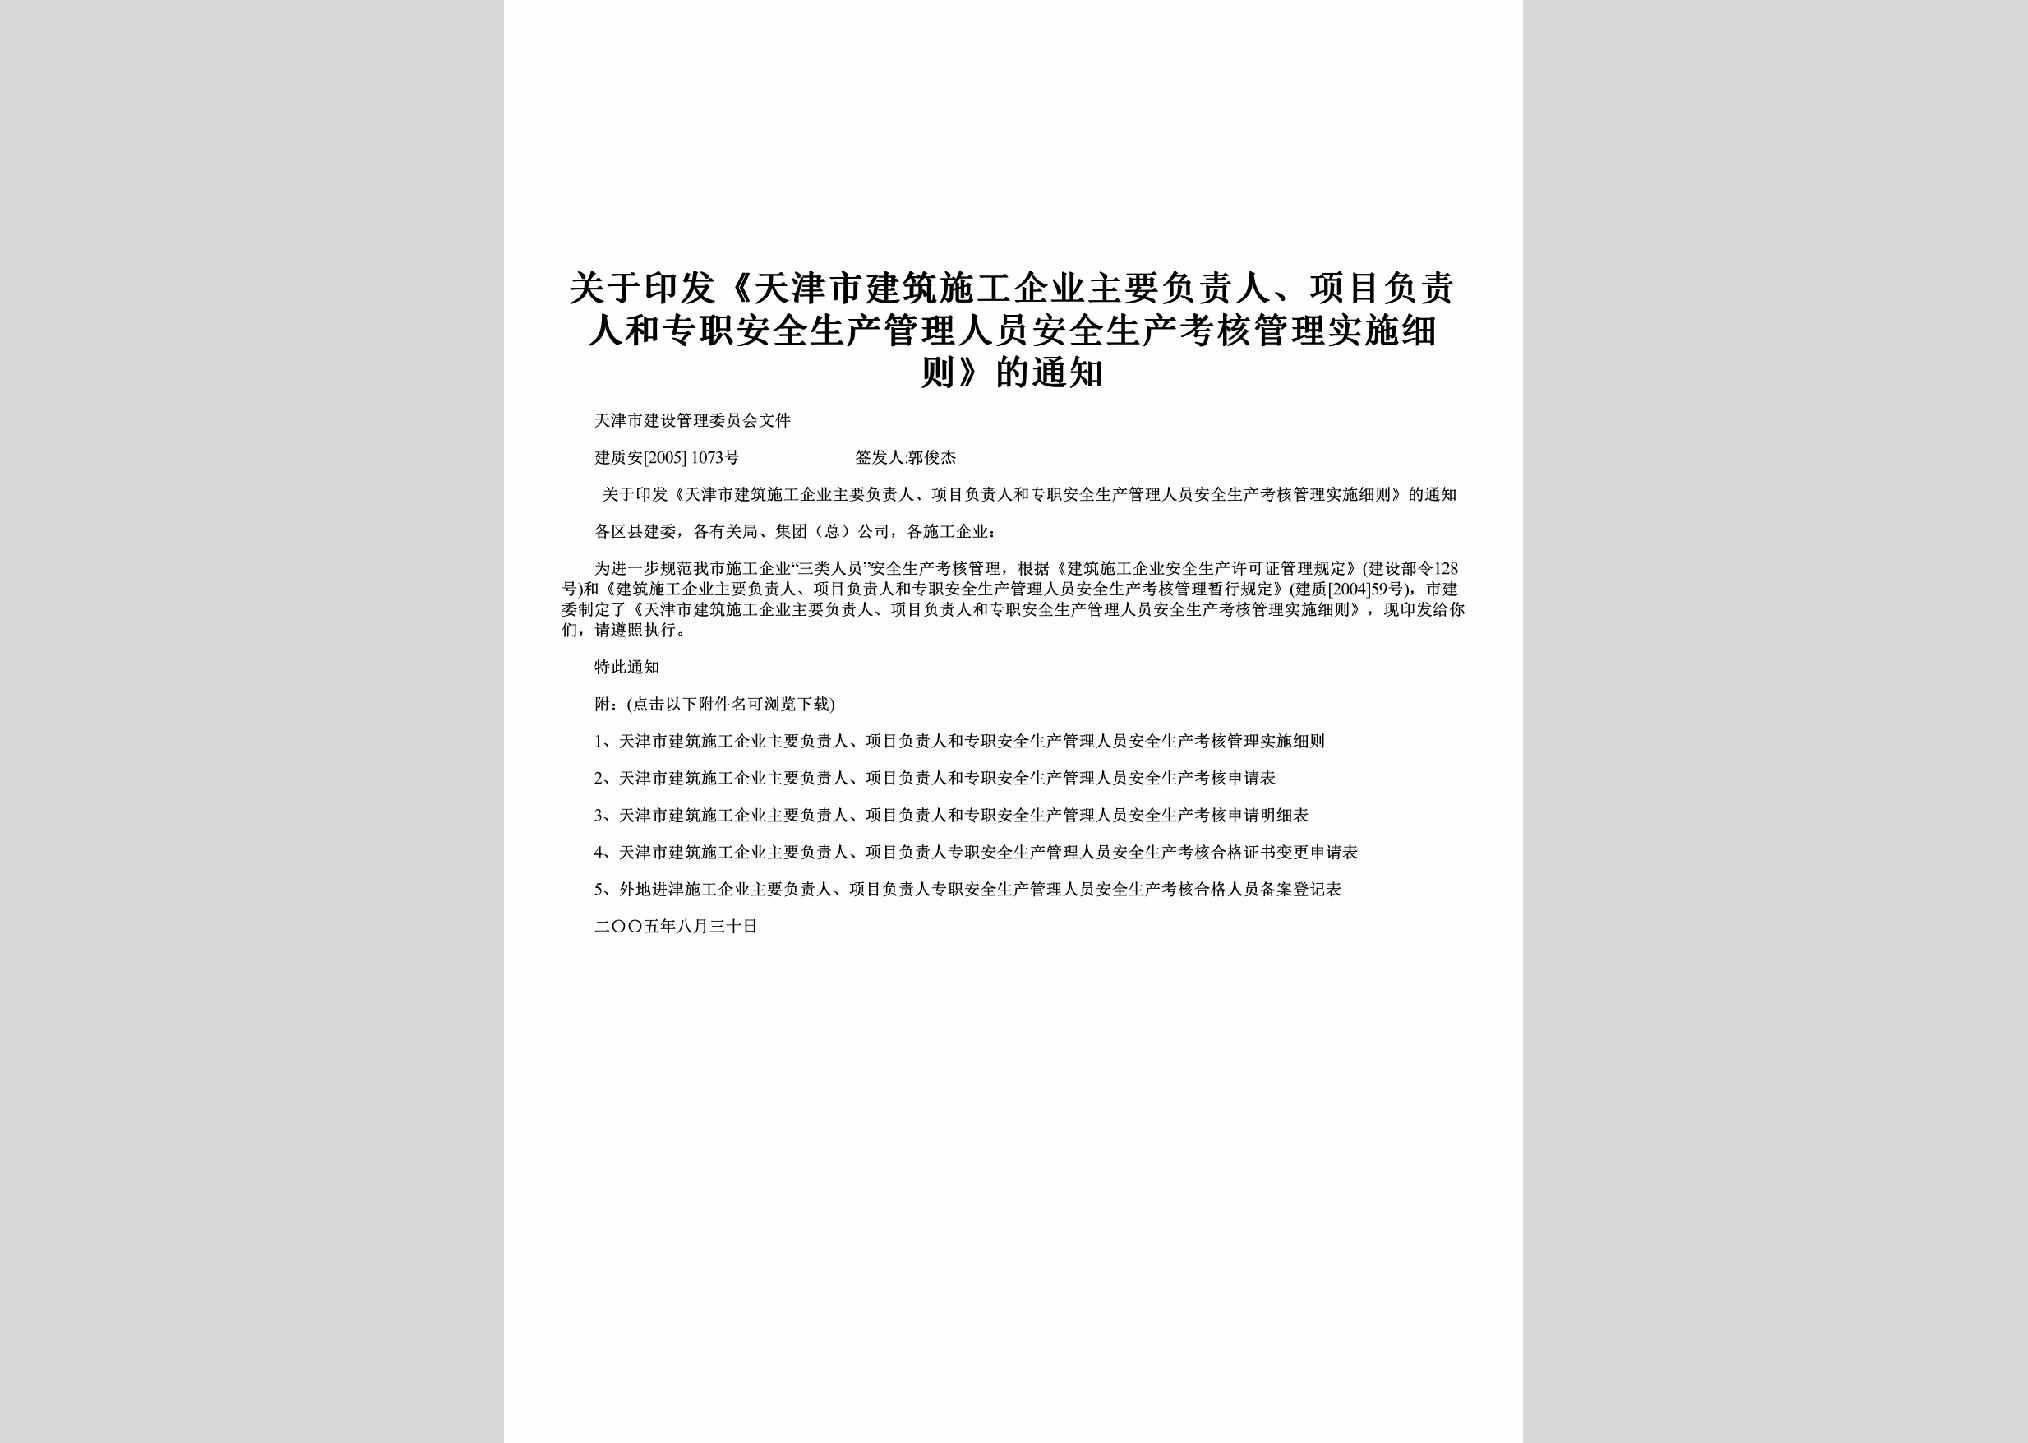 建质安[2005]1073号：关于印发《天津市建筑施工企业主要负责人、项目负责人和专职安全生产管理人员安全生产考核管理实施细则》的通知